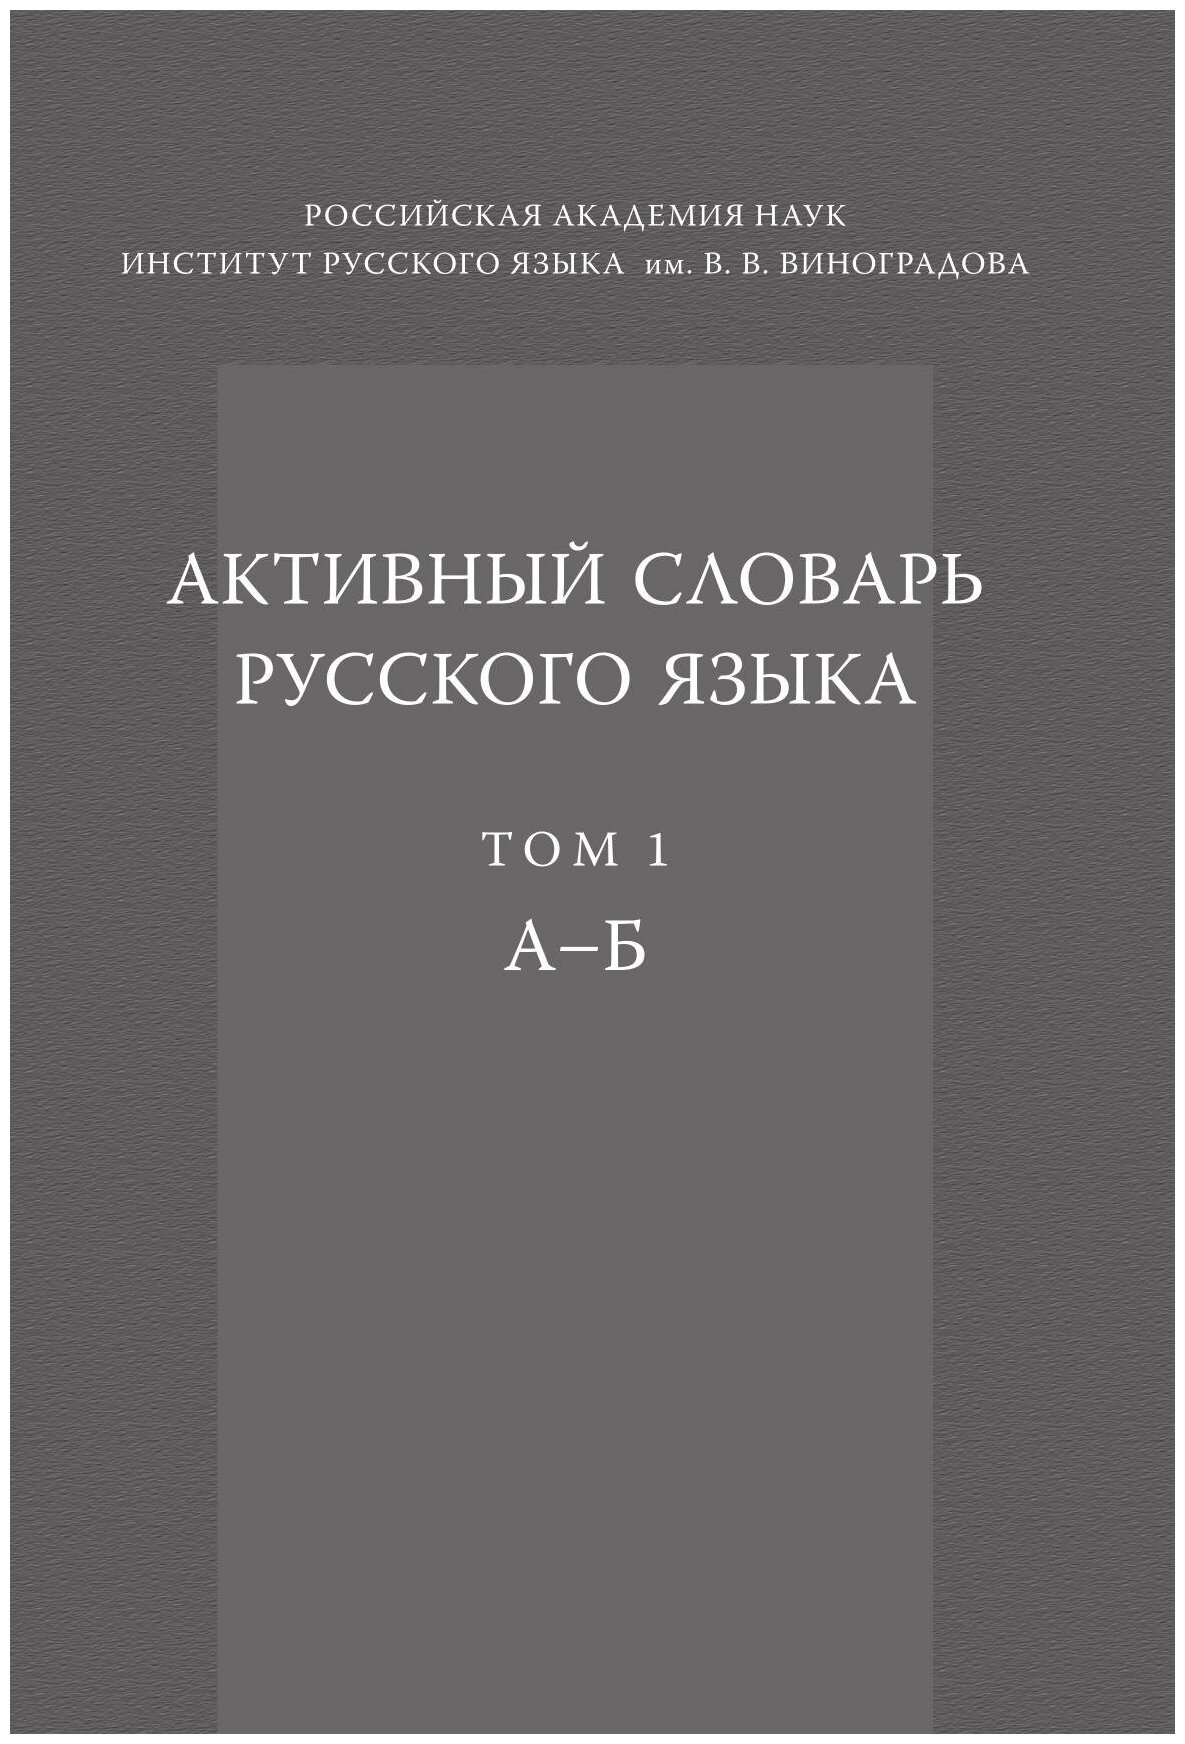 Активный словарь русского языка. Том 1. А-Б - фото №1